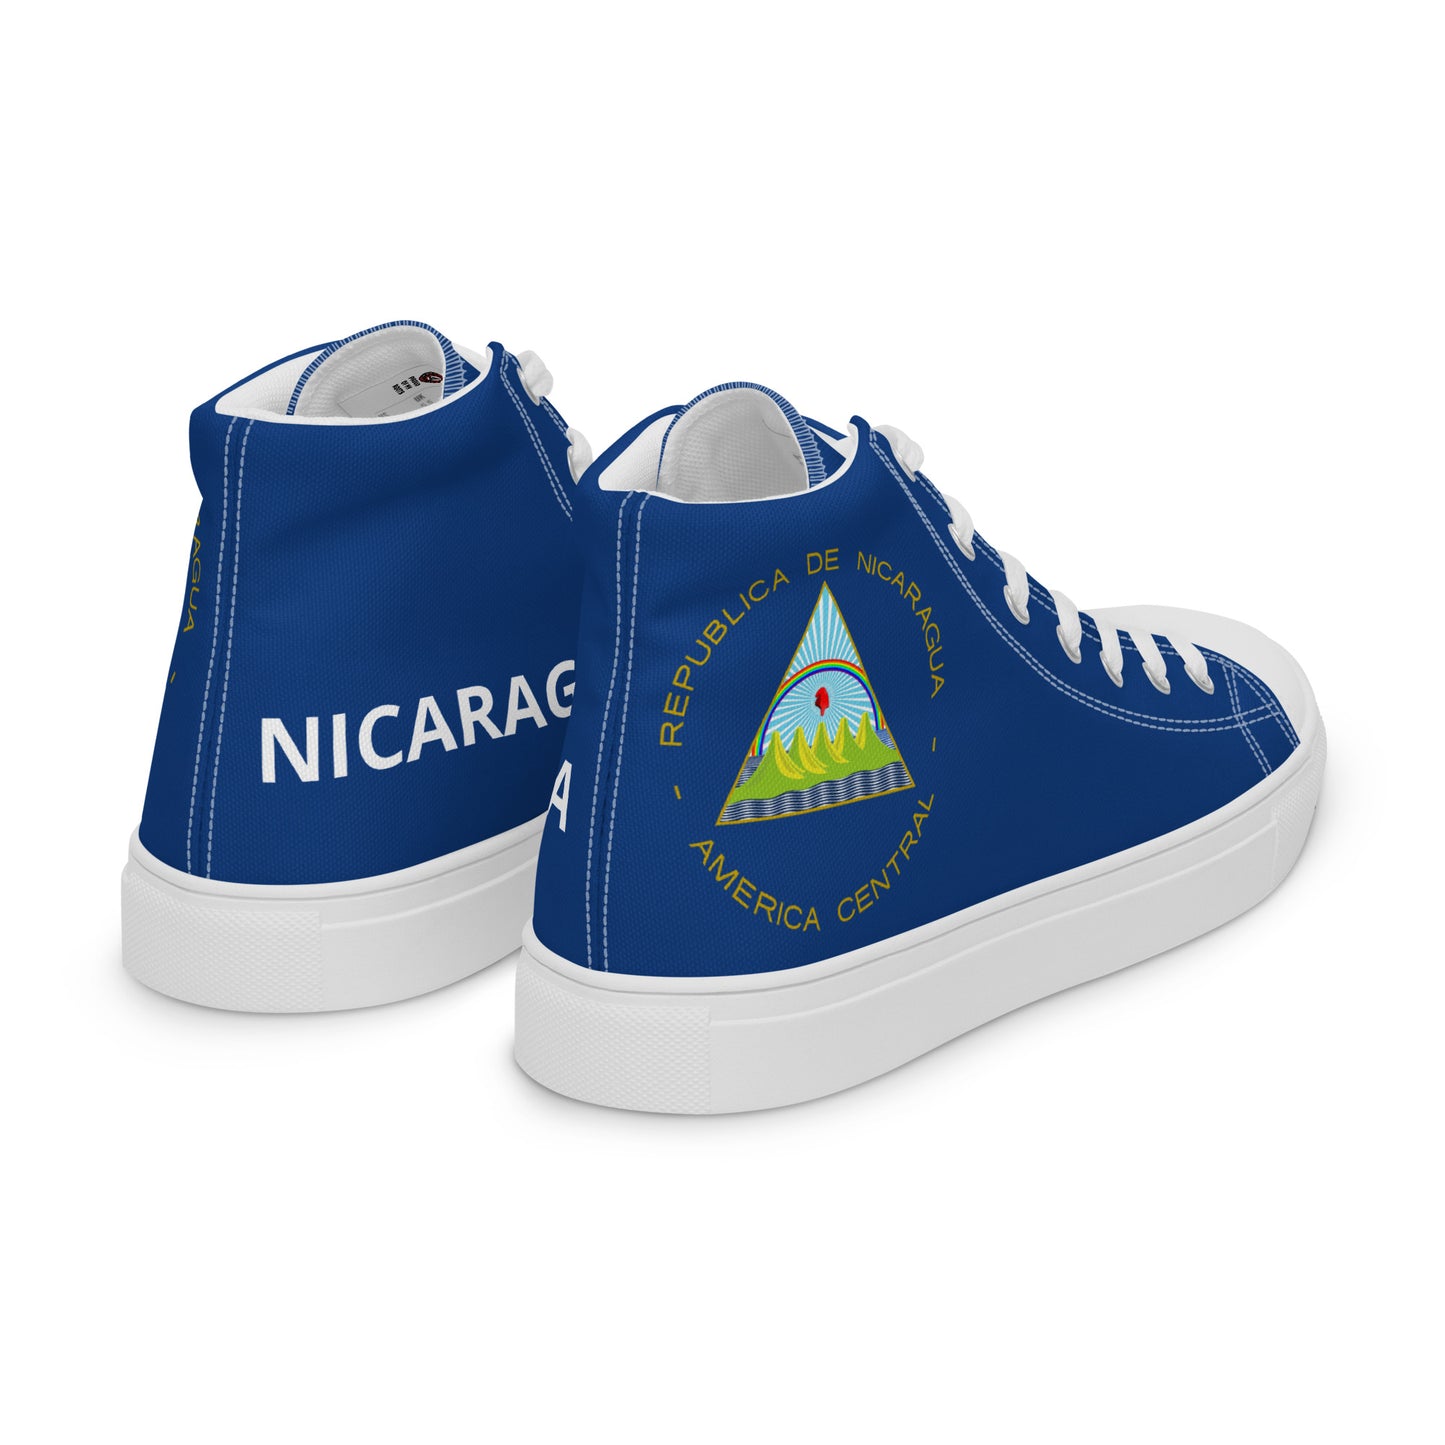 Nicaragua - Women - Blue - High top shoes